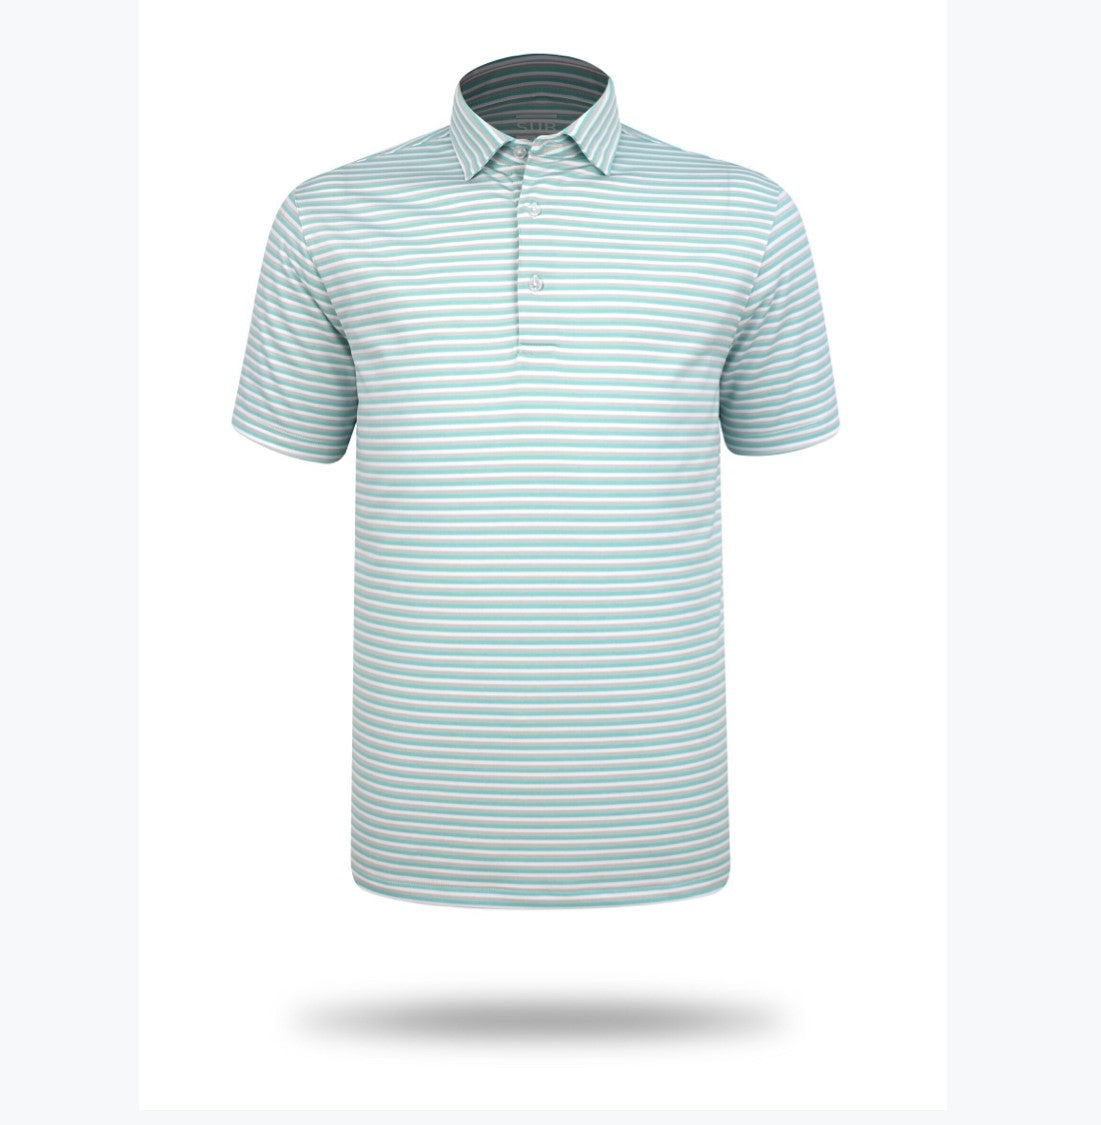 Sub 70 Tour Classic Polo Stripe #4 Turquoise/ White